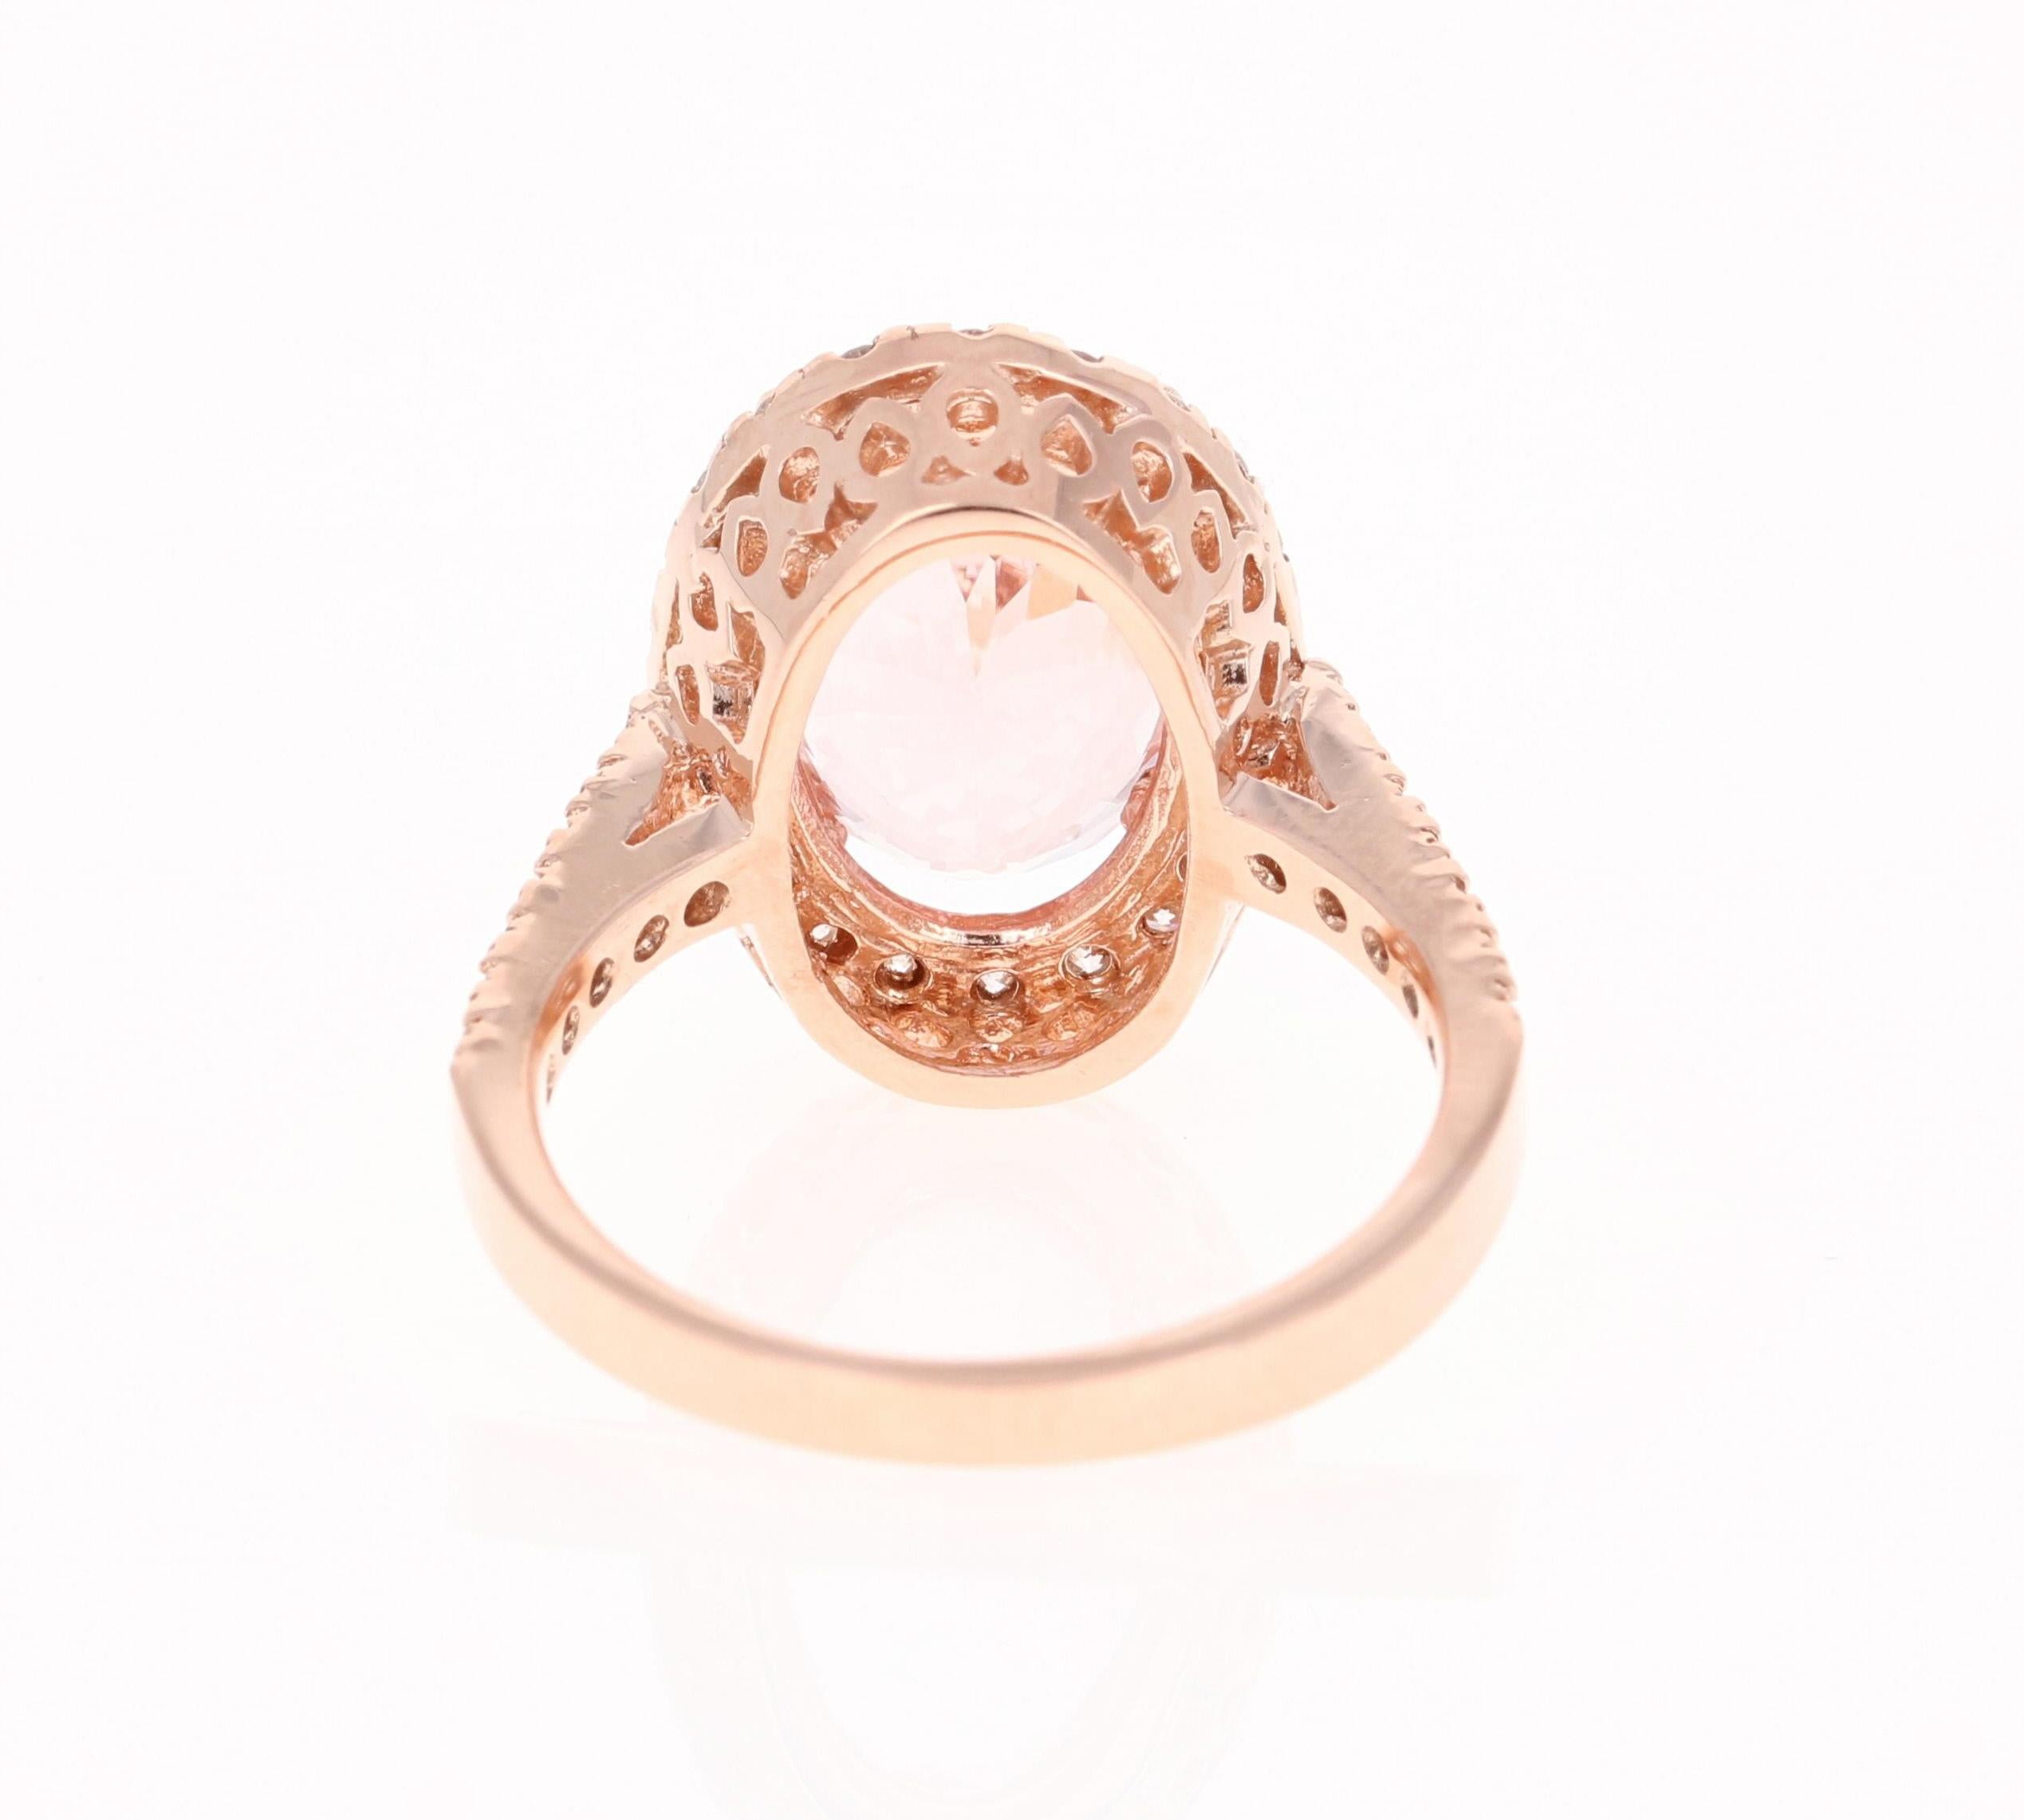 Oval Cut 4.99 Carat Pink Morganite Diamond 14 Karat Rose Gold Bridal Ring